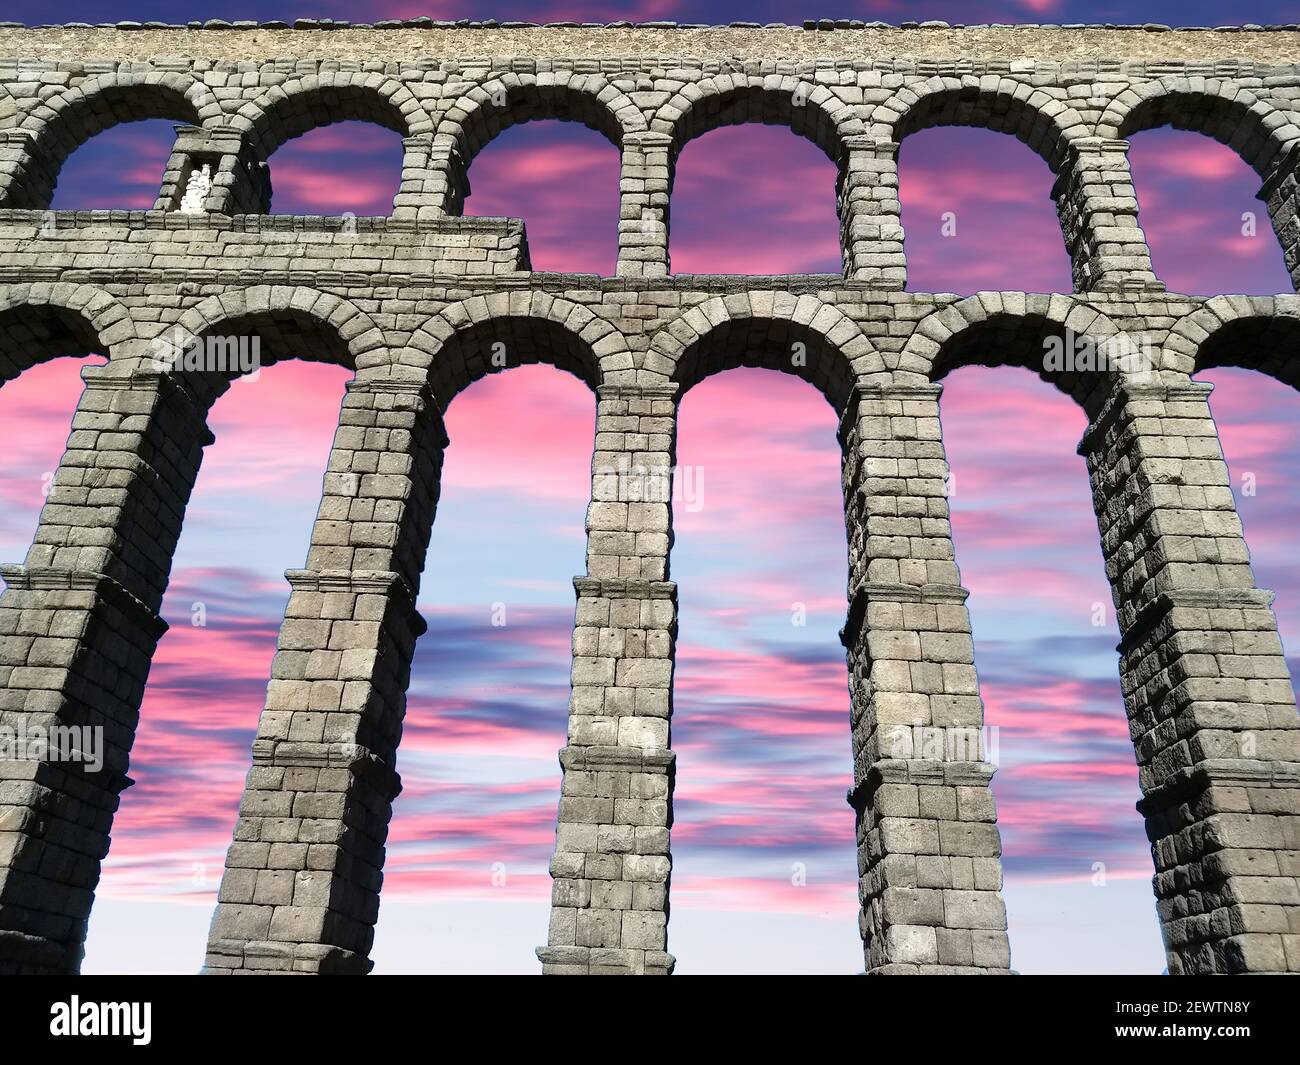 Puesta de sol en el acueducto de Segovia acueducto romano en Segovia, España. Foto de stock